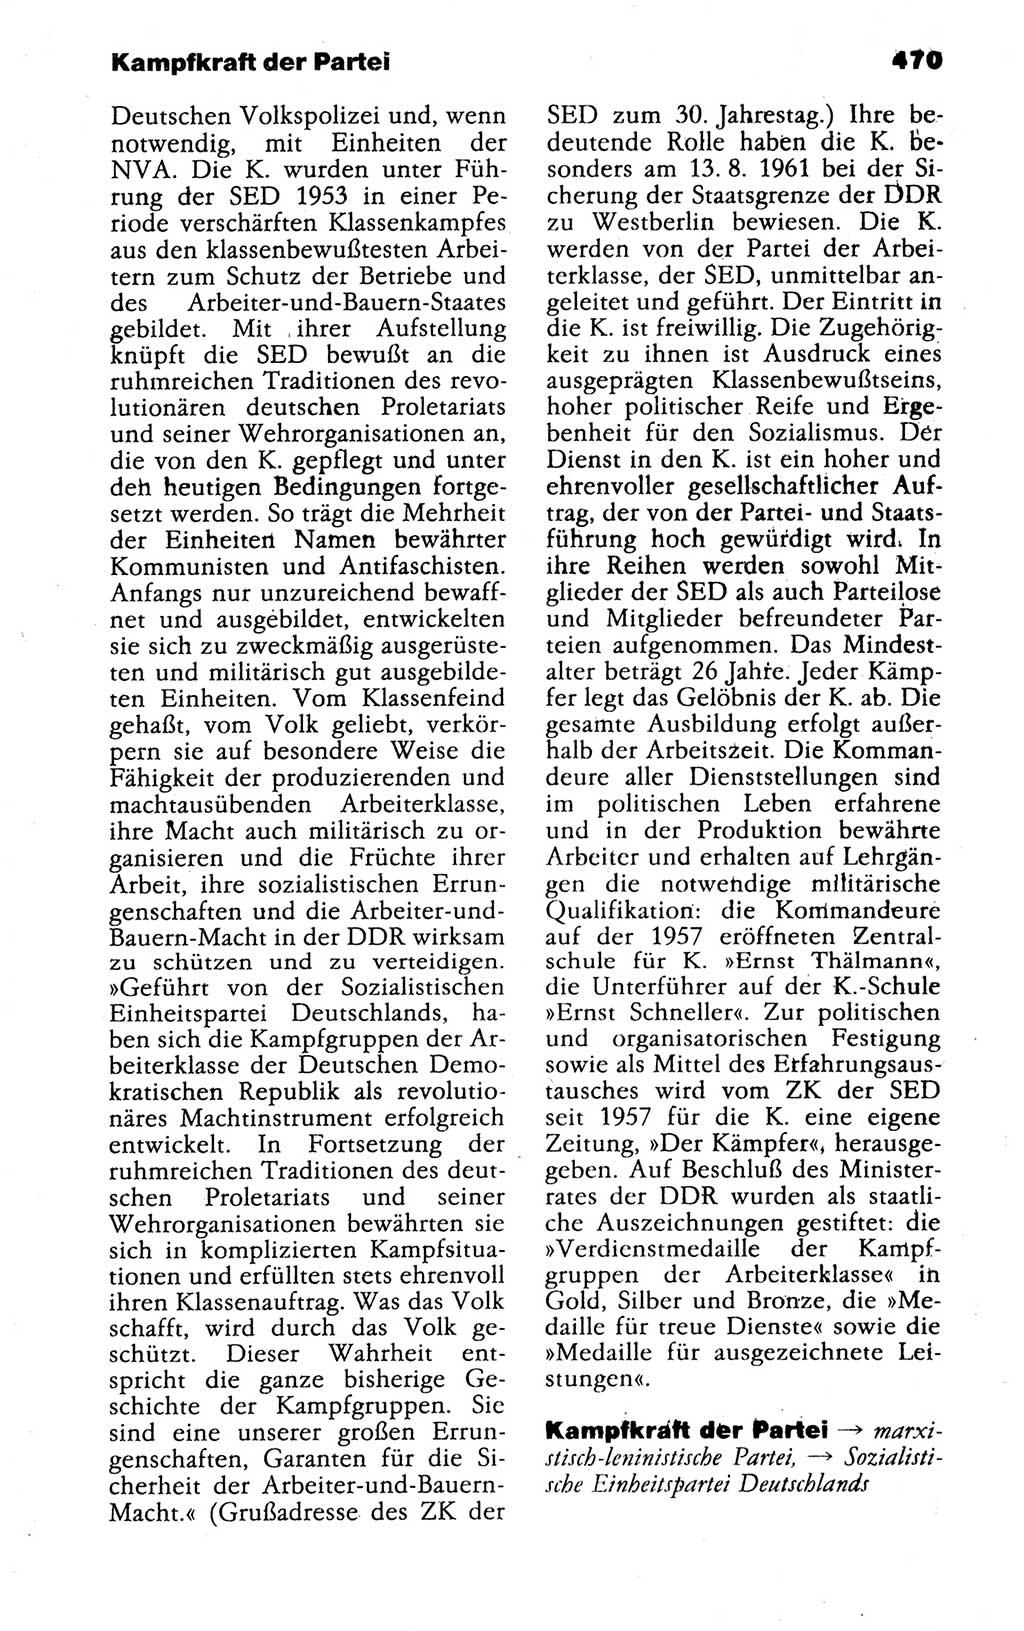 Kleines politisches Wörterbuch [Deutsche Demokratische Republik (DDR)] 1988, Seite 470 (Kl. pol. Wb. DDR 1988, S. 470)